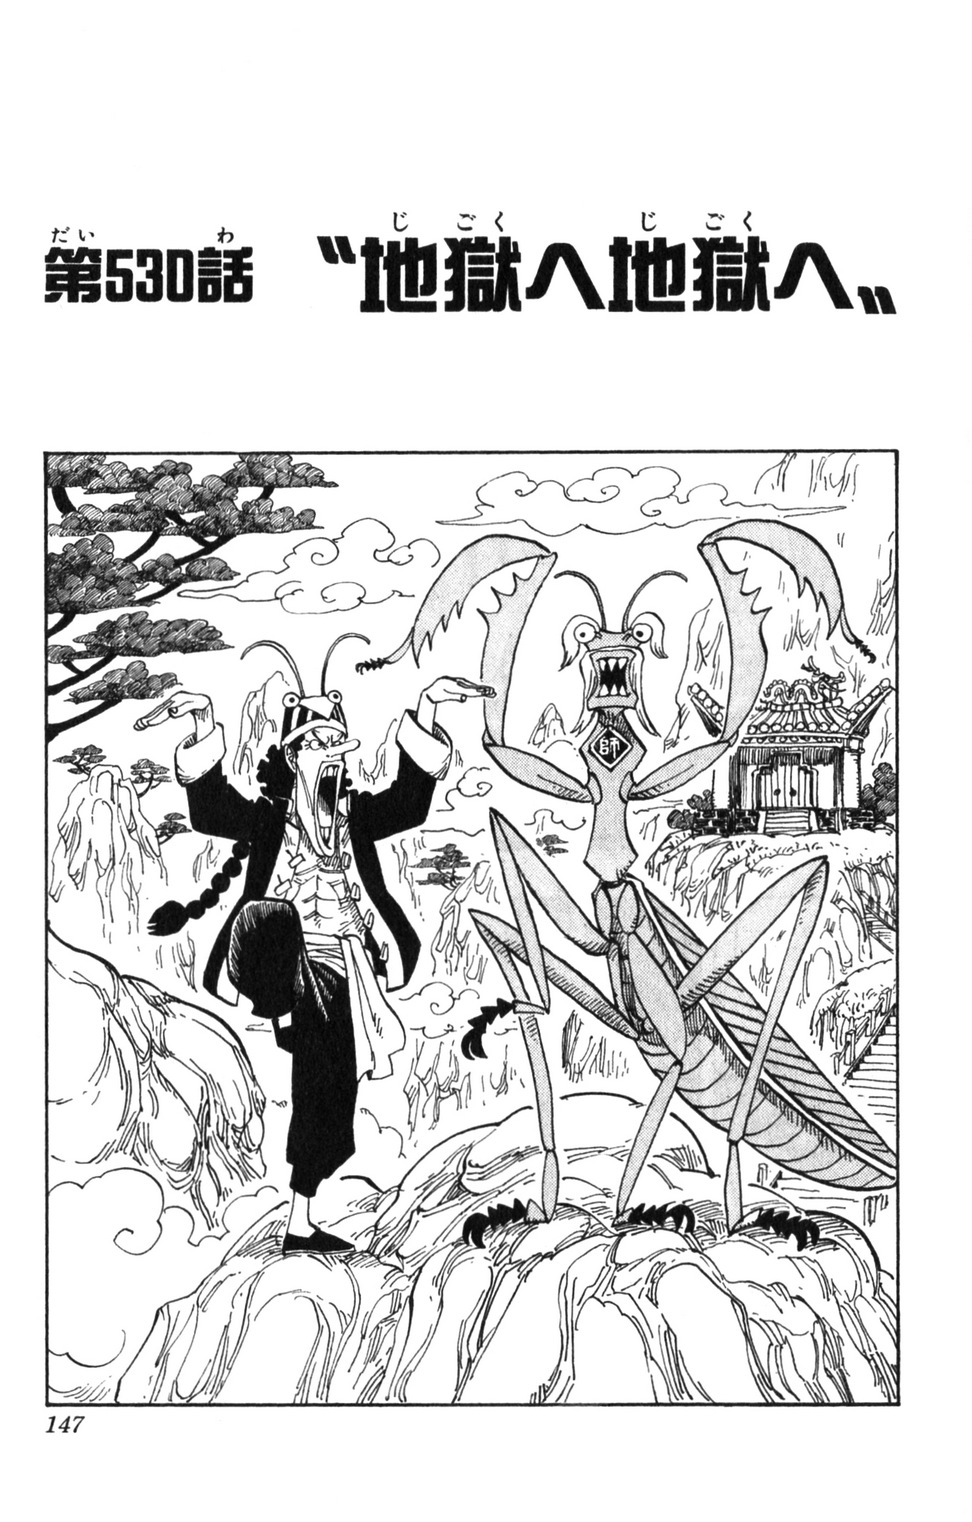 Chapitre 530 One Piece Encyclopedie Fandom